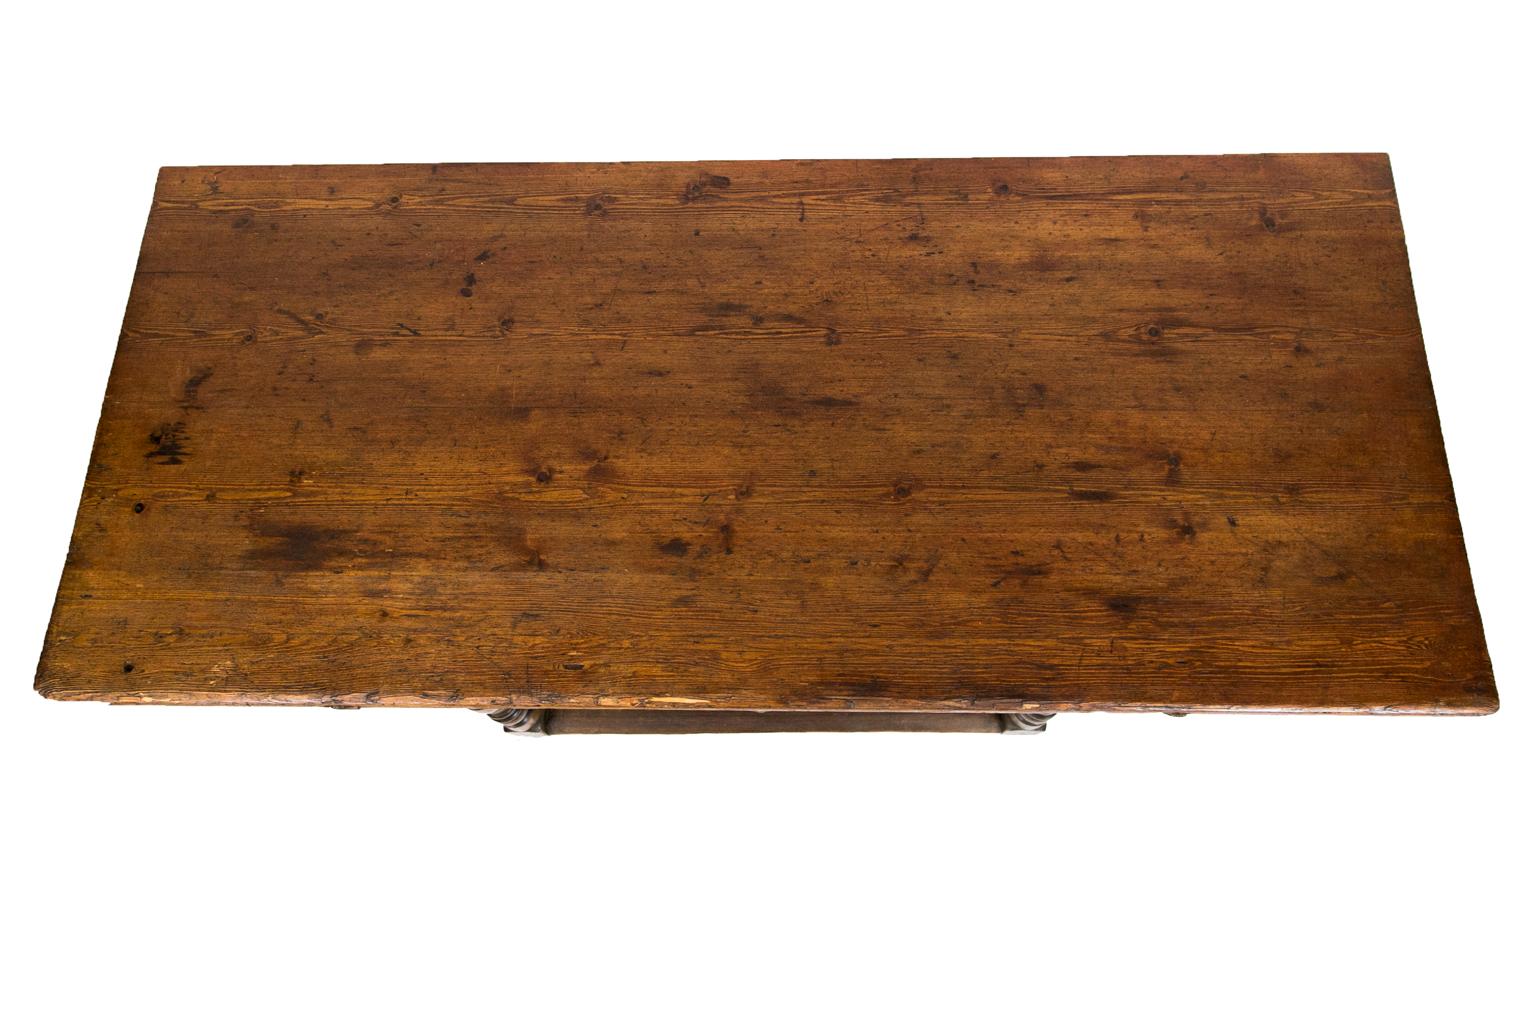 Table de taverne russe en pin, a la peinture brune d'origine sur la base, et a un dessus en pin frotté (le dessus est amovible).
   